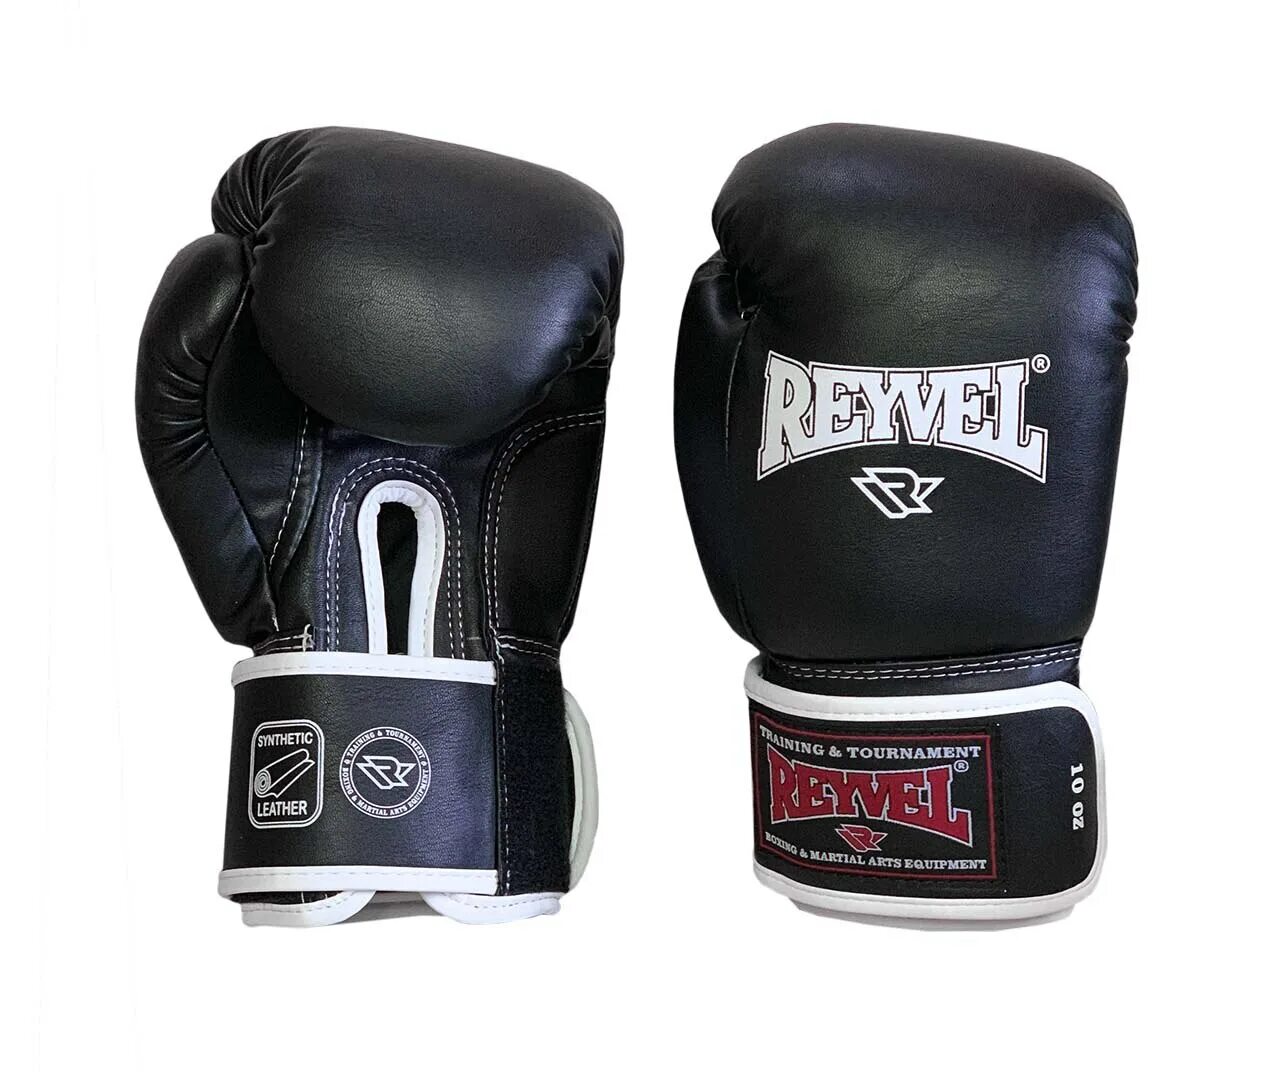 Боксерские перчатки Reyvel 12 oz. Перчатки боксерские 10 унций Reyvel. Перчатки боксерские Reyvel RV-101 черный. Перчатки рейвел для ММА. Перчатки 10 унций купить